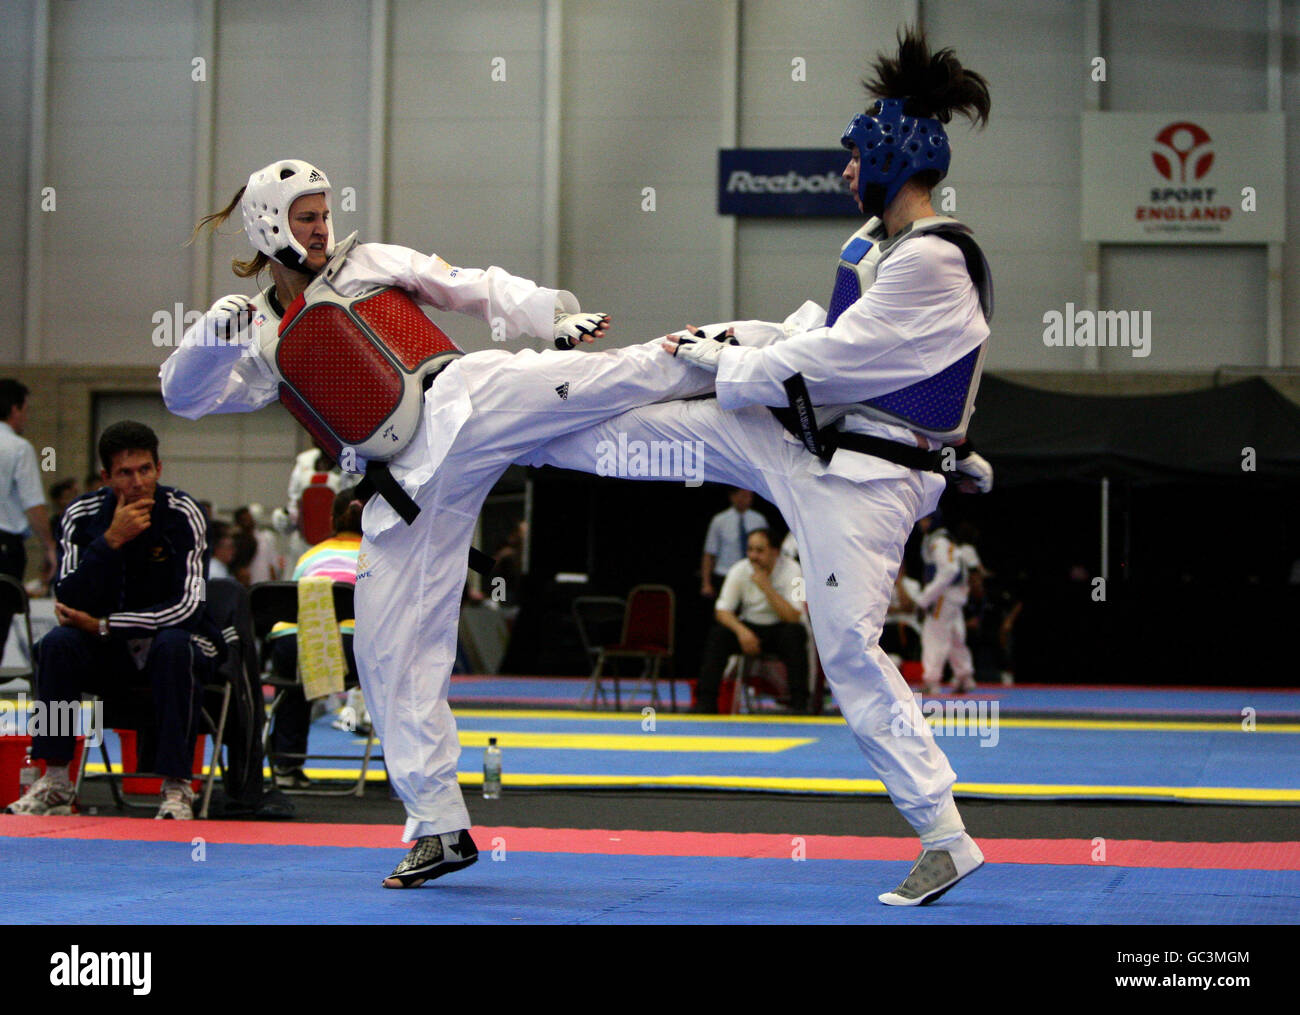 Taekwondo - British International Taekwondo Open - National Squash Centre  Stock Photo - Alamy